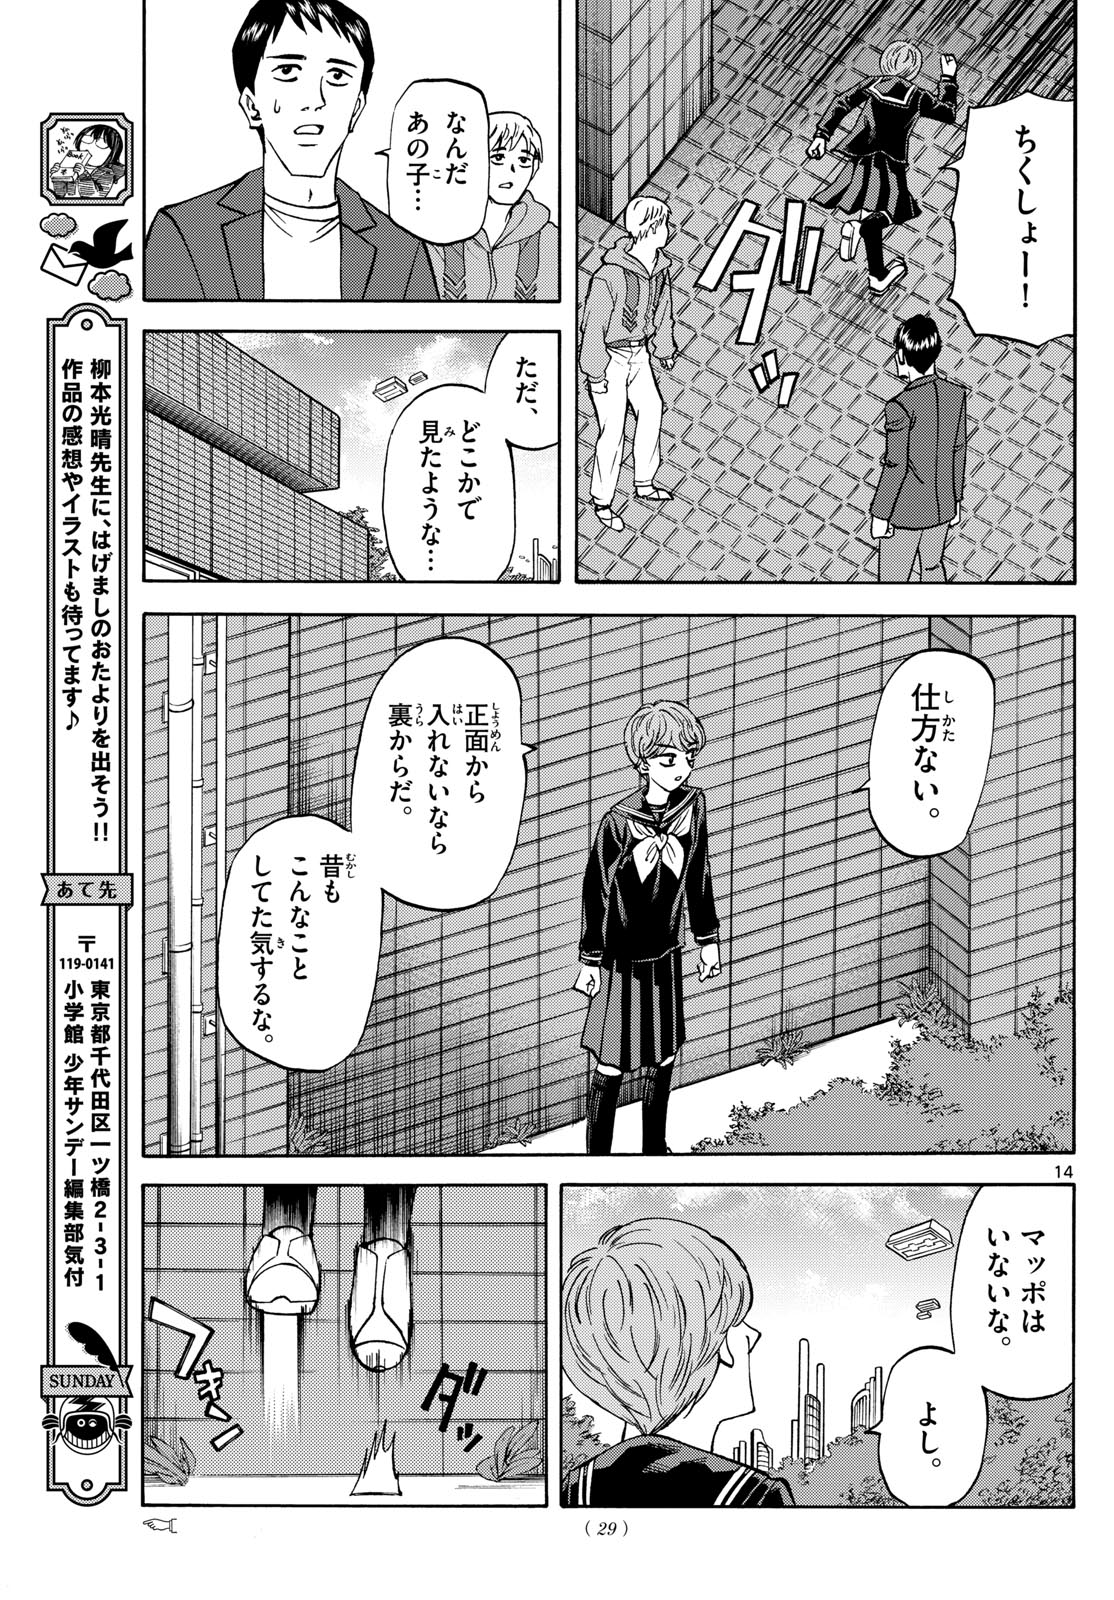 Tatsu to Ichigo - Chapter 182 - Page 14